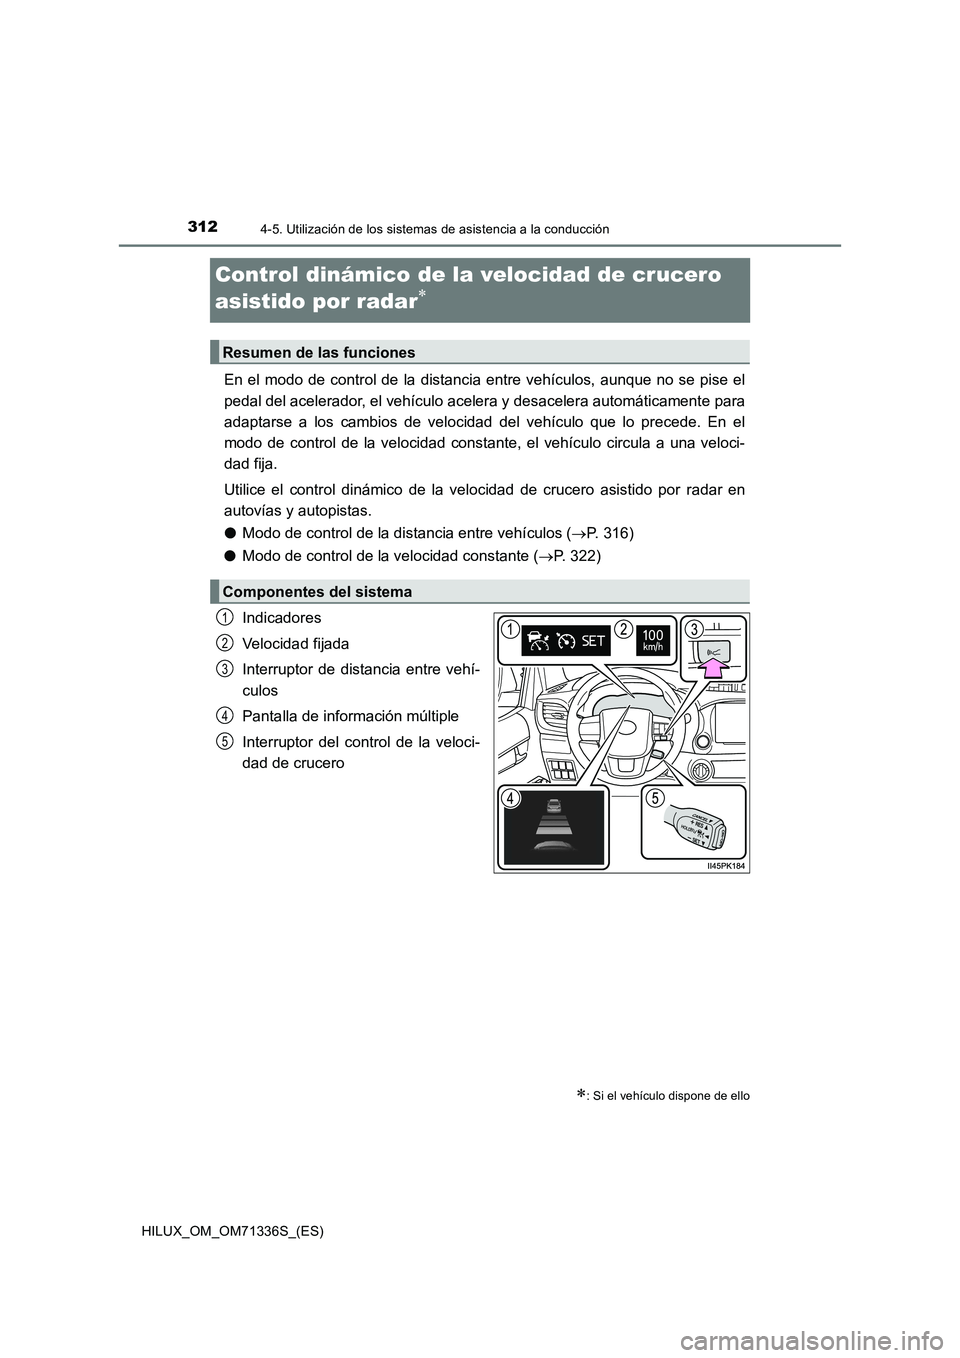 TOYOTA HILUX 2021  Manuale de Empleo (in Spanish) 3124-5. Utilización de los sistemas de asistencia a la conducción
HILUX_OM_OM71336S_(ES)
Control dinámico de la velocidad de crucero 
asistido por radar

En el modo de control de la distancia en